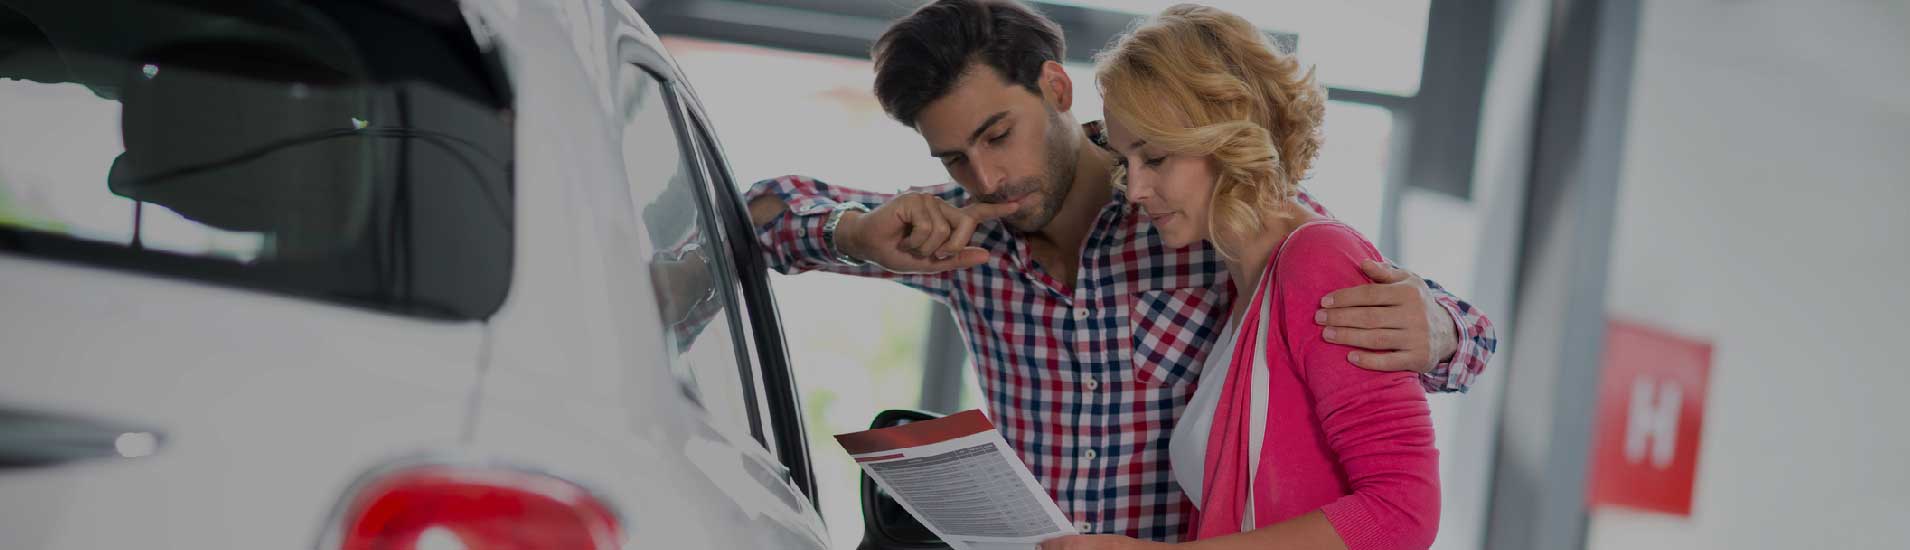 Telemarketing for car dealerships